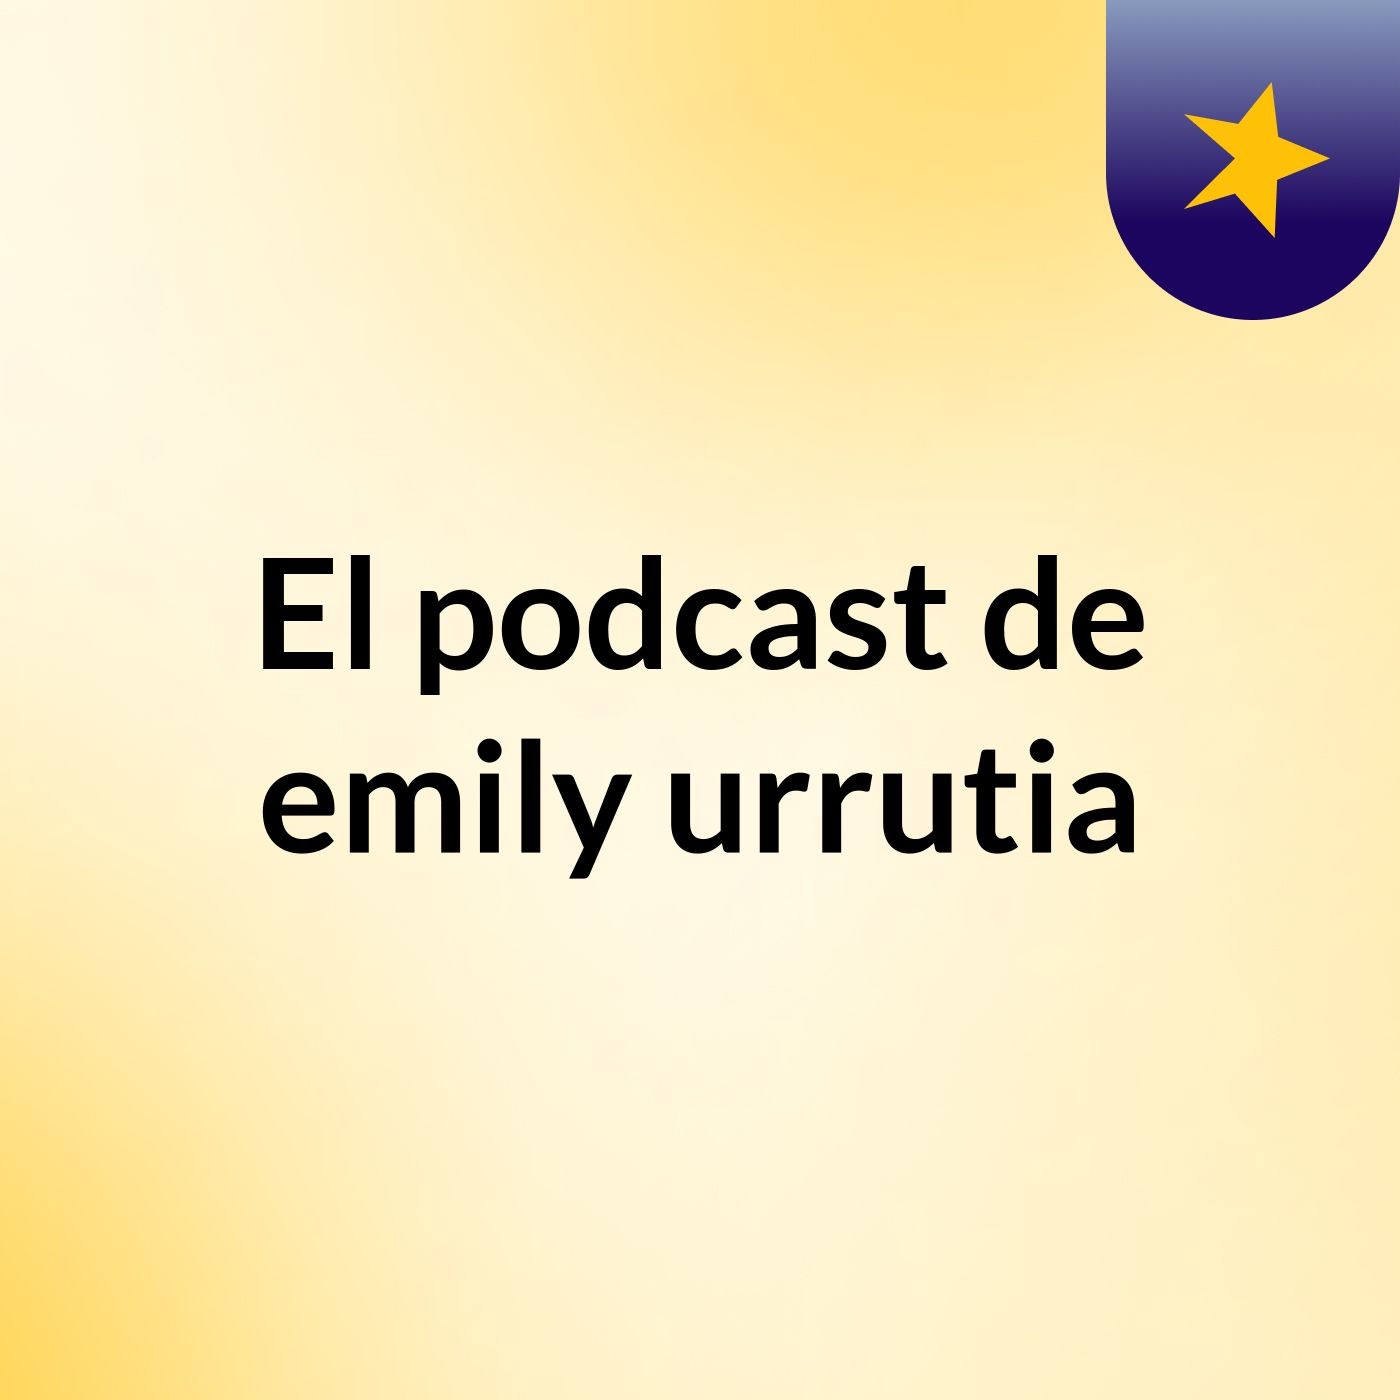 El podcast de emily urrutia